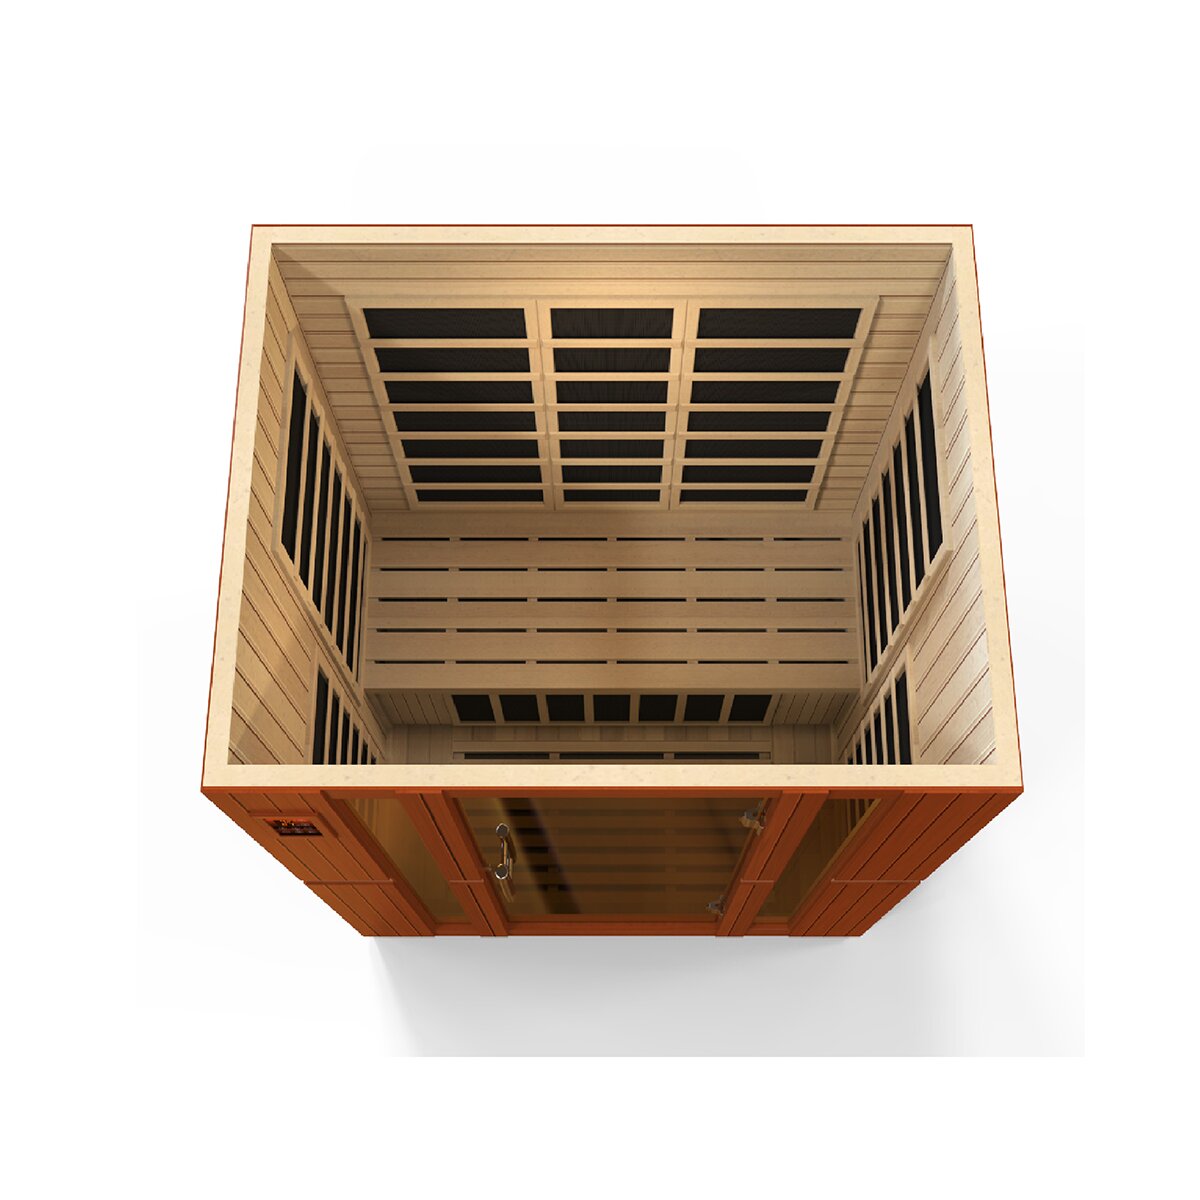  Amplia sala de sauna de infrarrojos lejanos con múltiples  opciones de ejercicio, calefacción de cristal de carbono no radiativo,  diseño impermeable, panel de control LCD e iluminación LED, mejora el  metabolismo